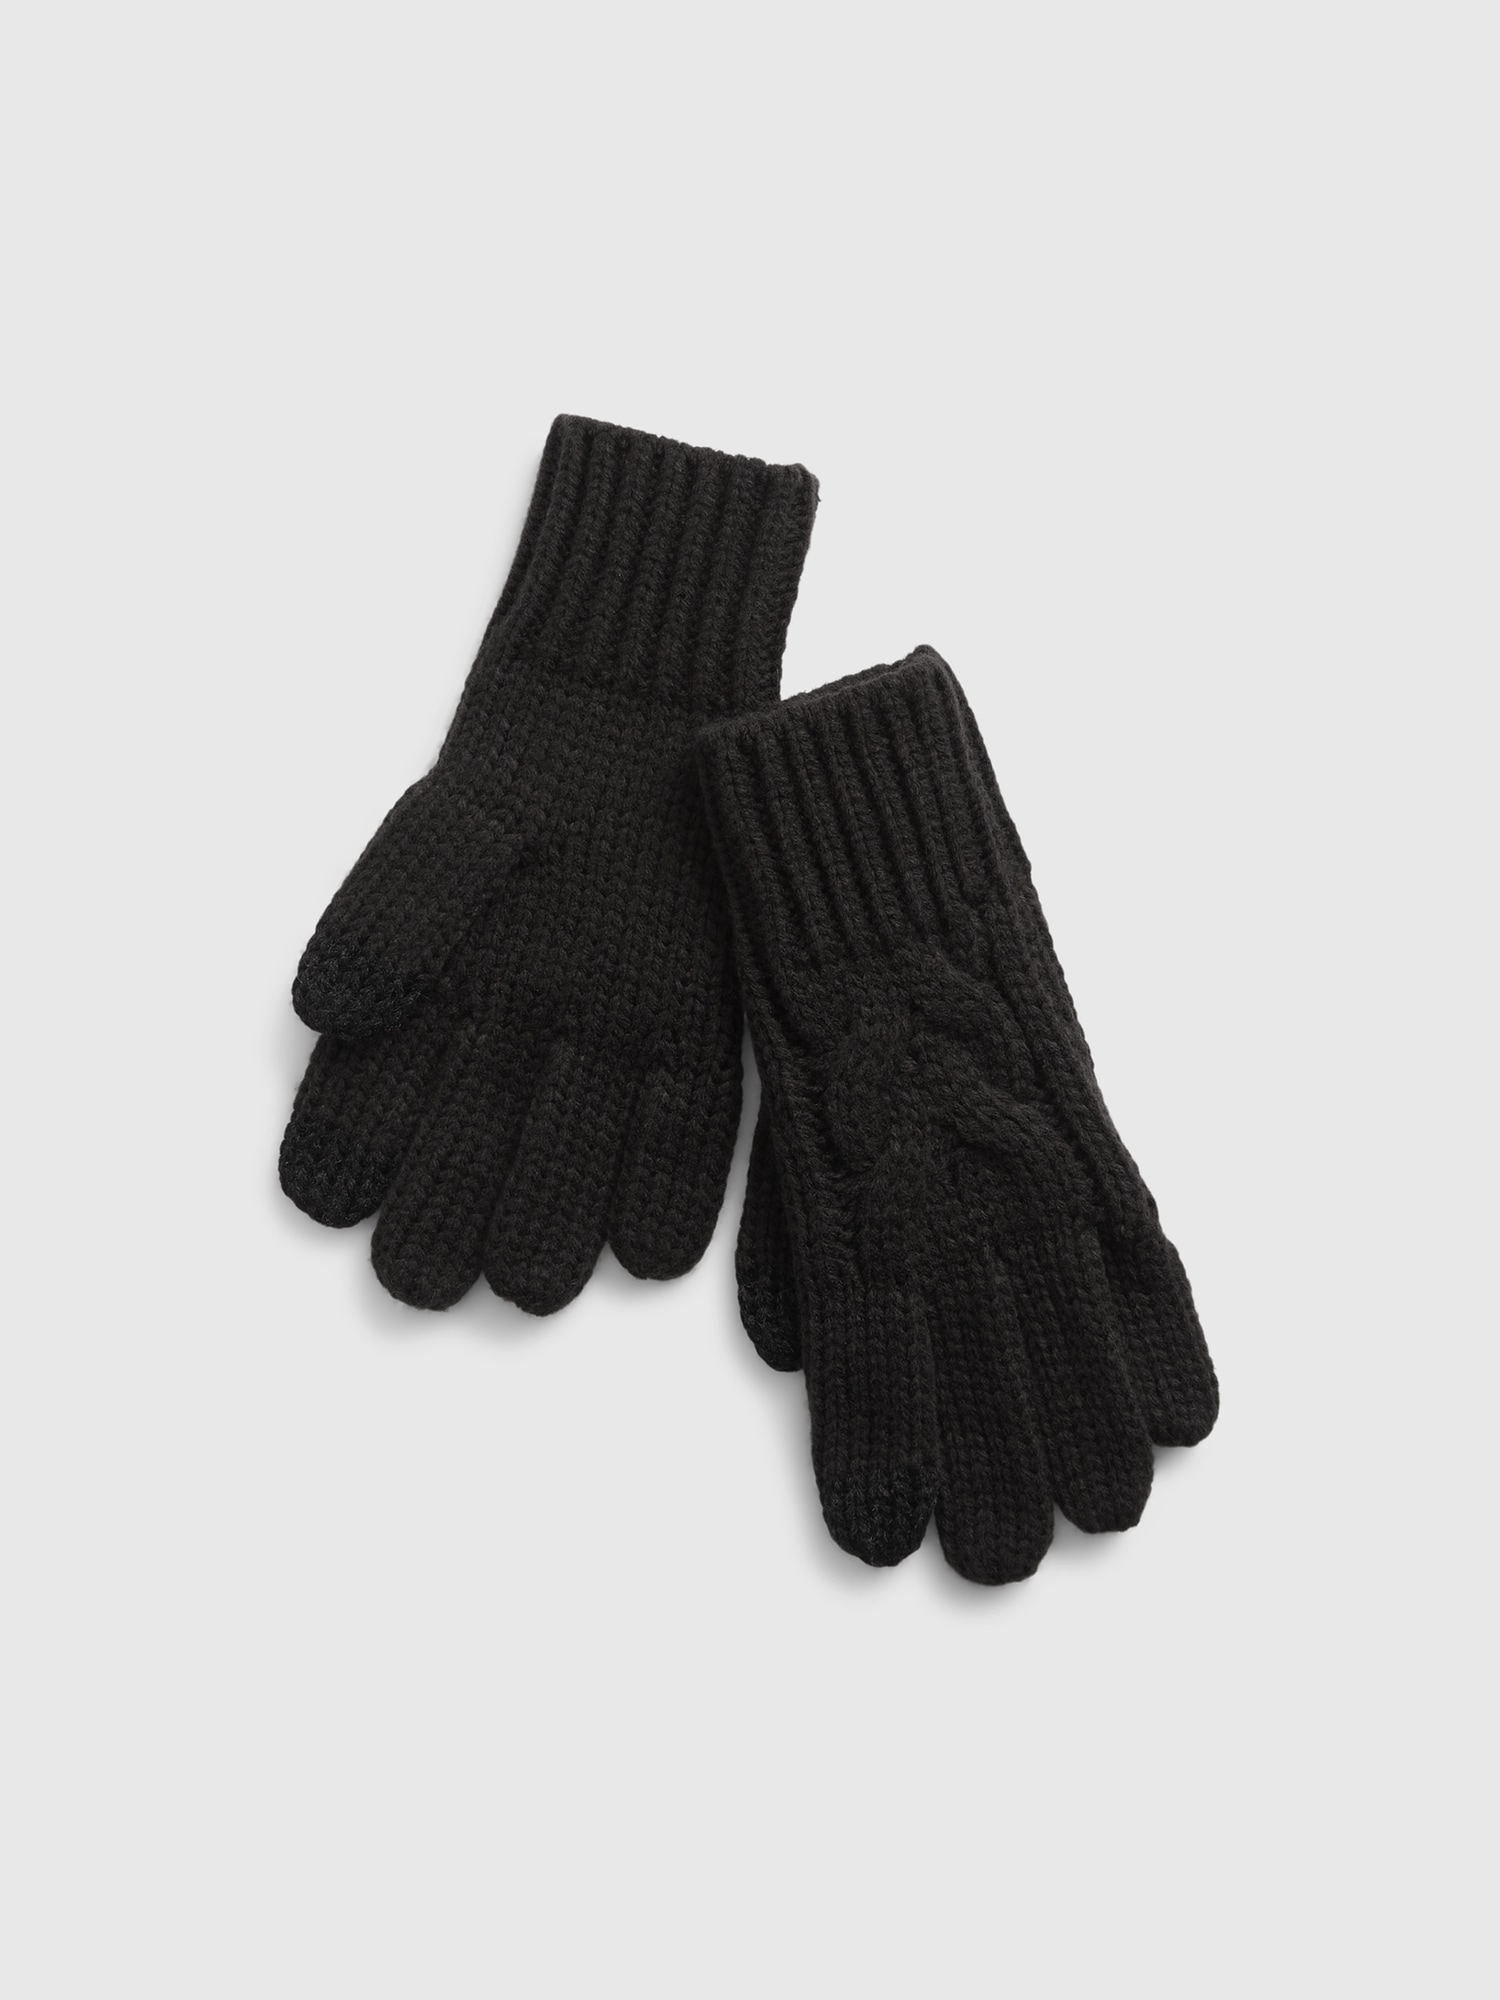 GAP Kids Knitted Gloves - Girls